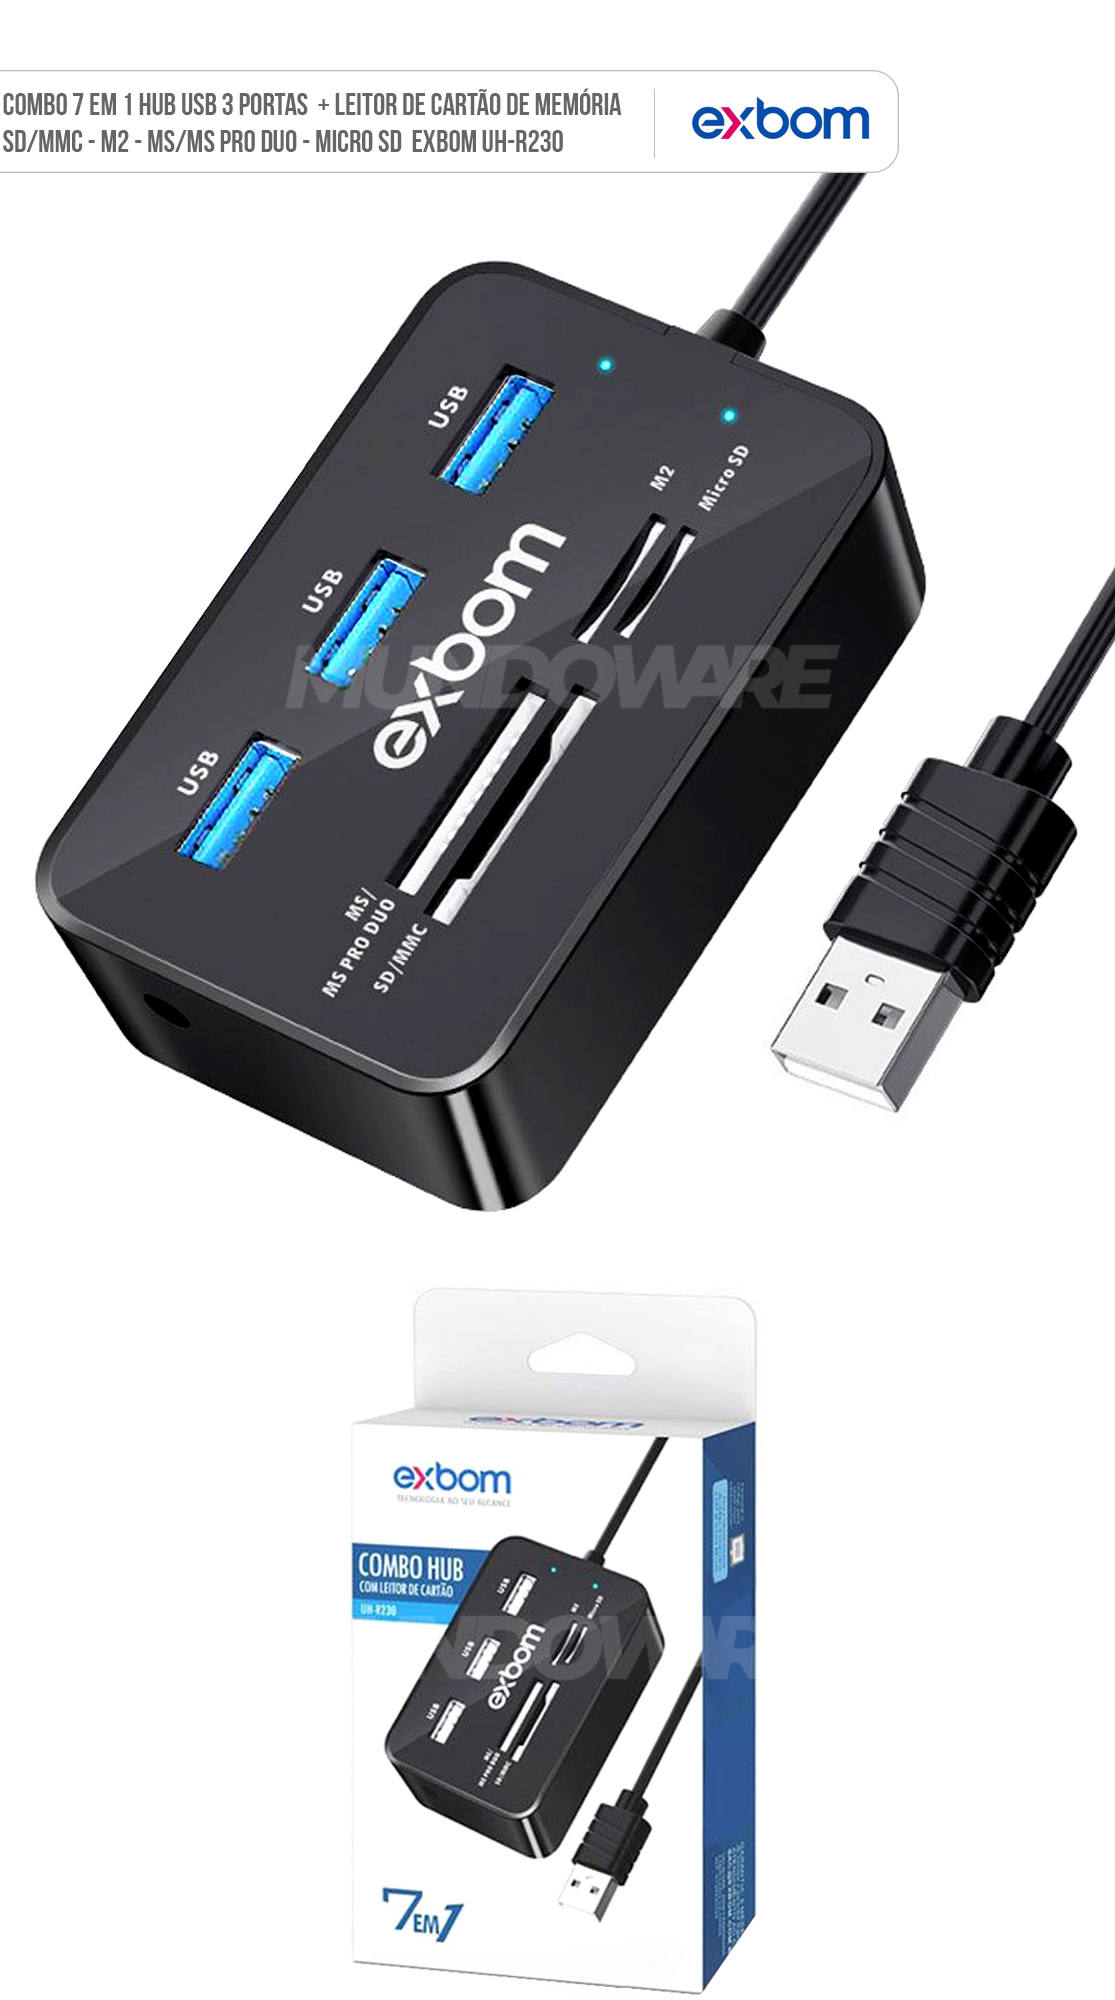 Combo Hub USB + Leitor de Cartão de Memória 7 em 1 com 3 portas USB 2.0 e Leitor de Cartão M2 MMC MS Duo SD/SDHC Micro SD Exbom UH-R230